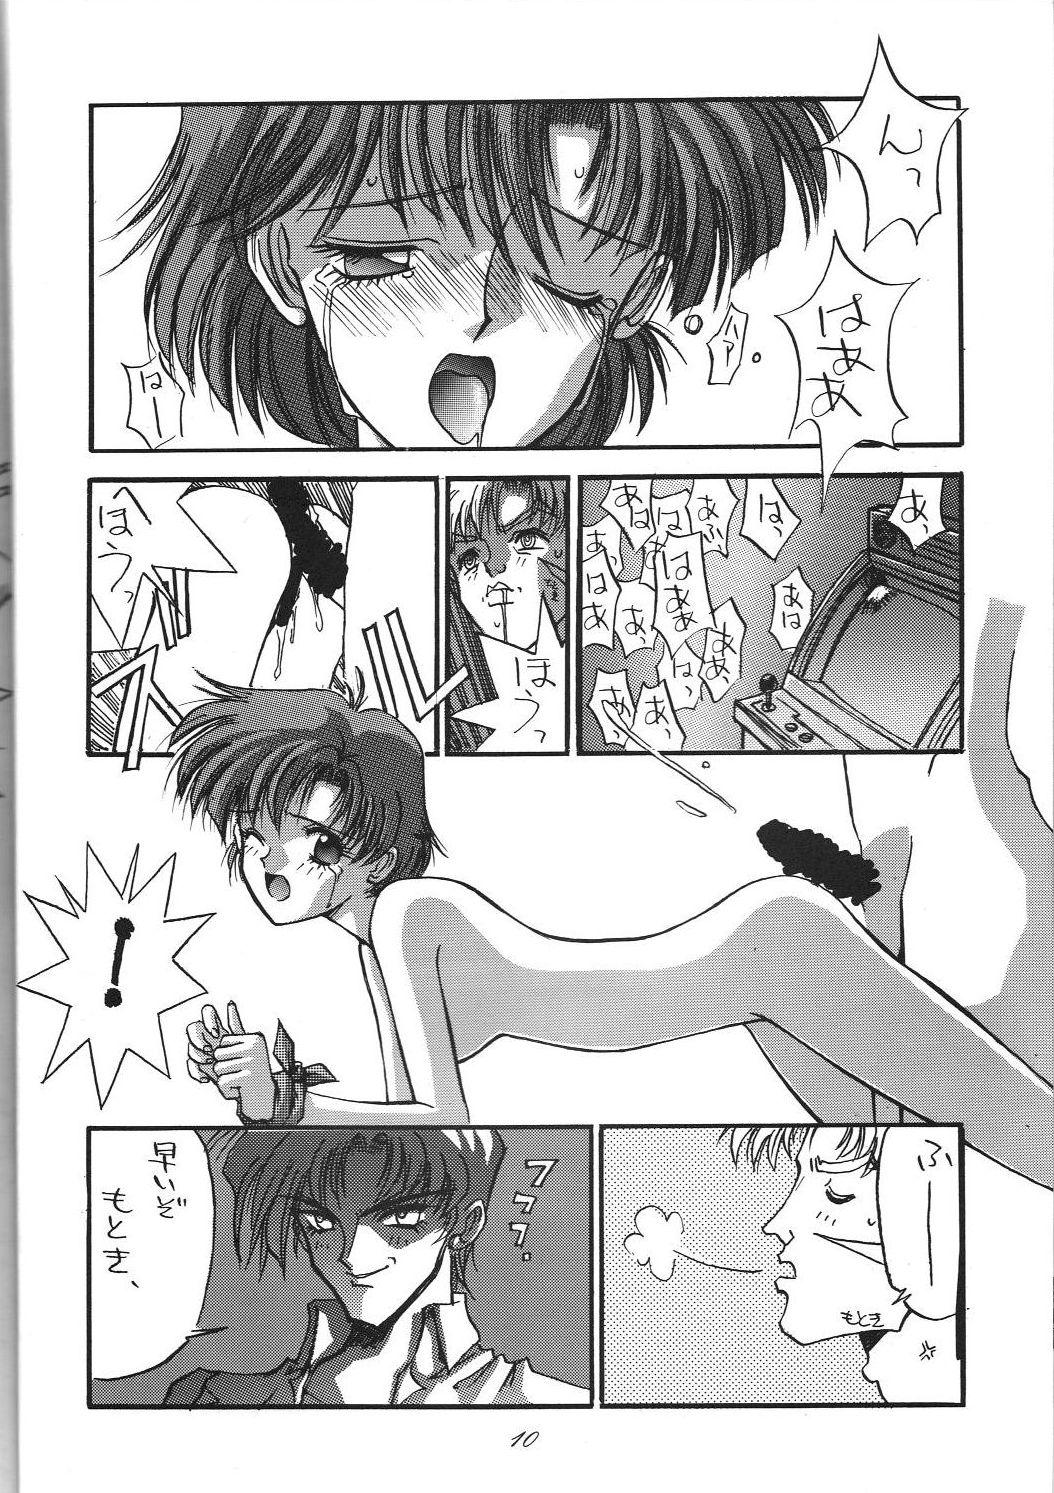 Office Fuck Kaishaku 6 Seppuku Keikaku - Sailor moon Ah my goddess Milk - Page 10